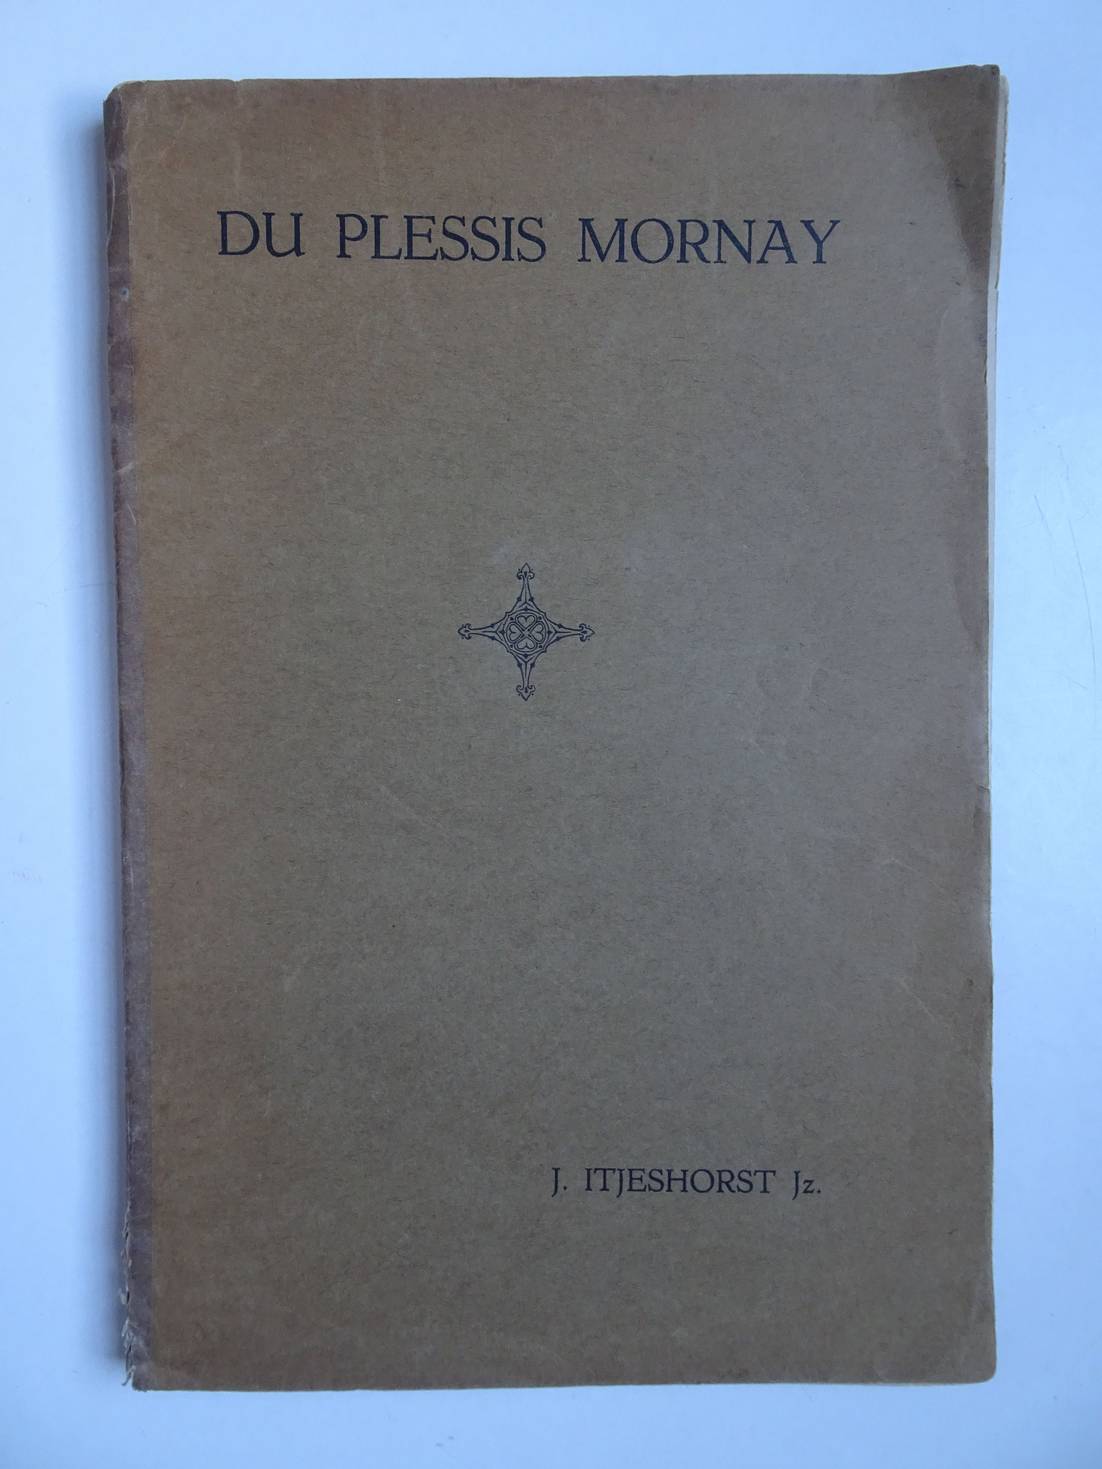 Itjeshorst Jz., J.. - De werkzaamheid van Du Plessis Mornay in dienst van Hendrik van Navarre, in de jaren 1576 tot 1582.